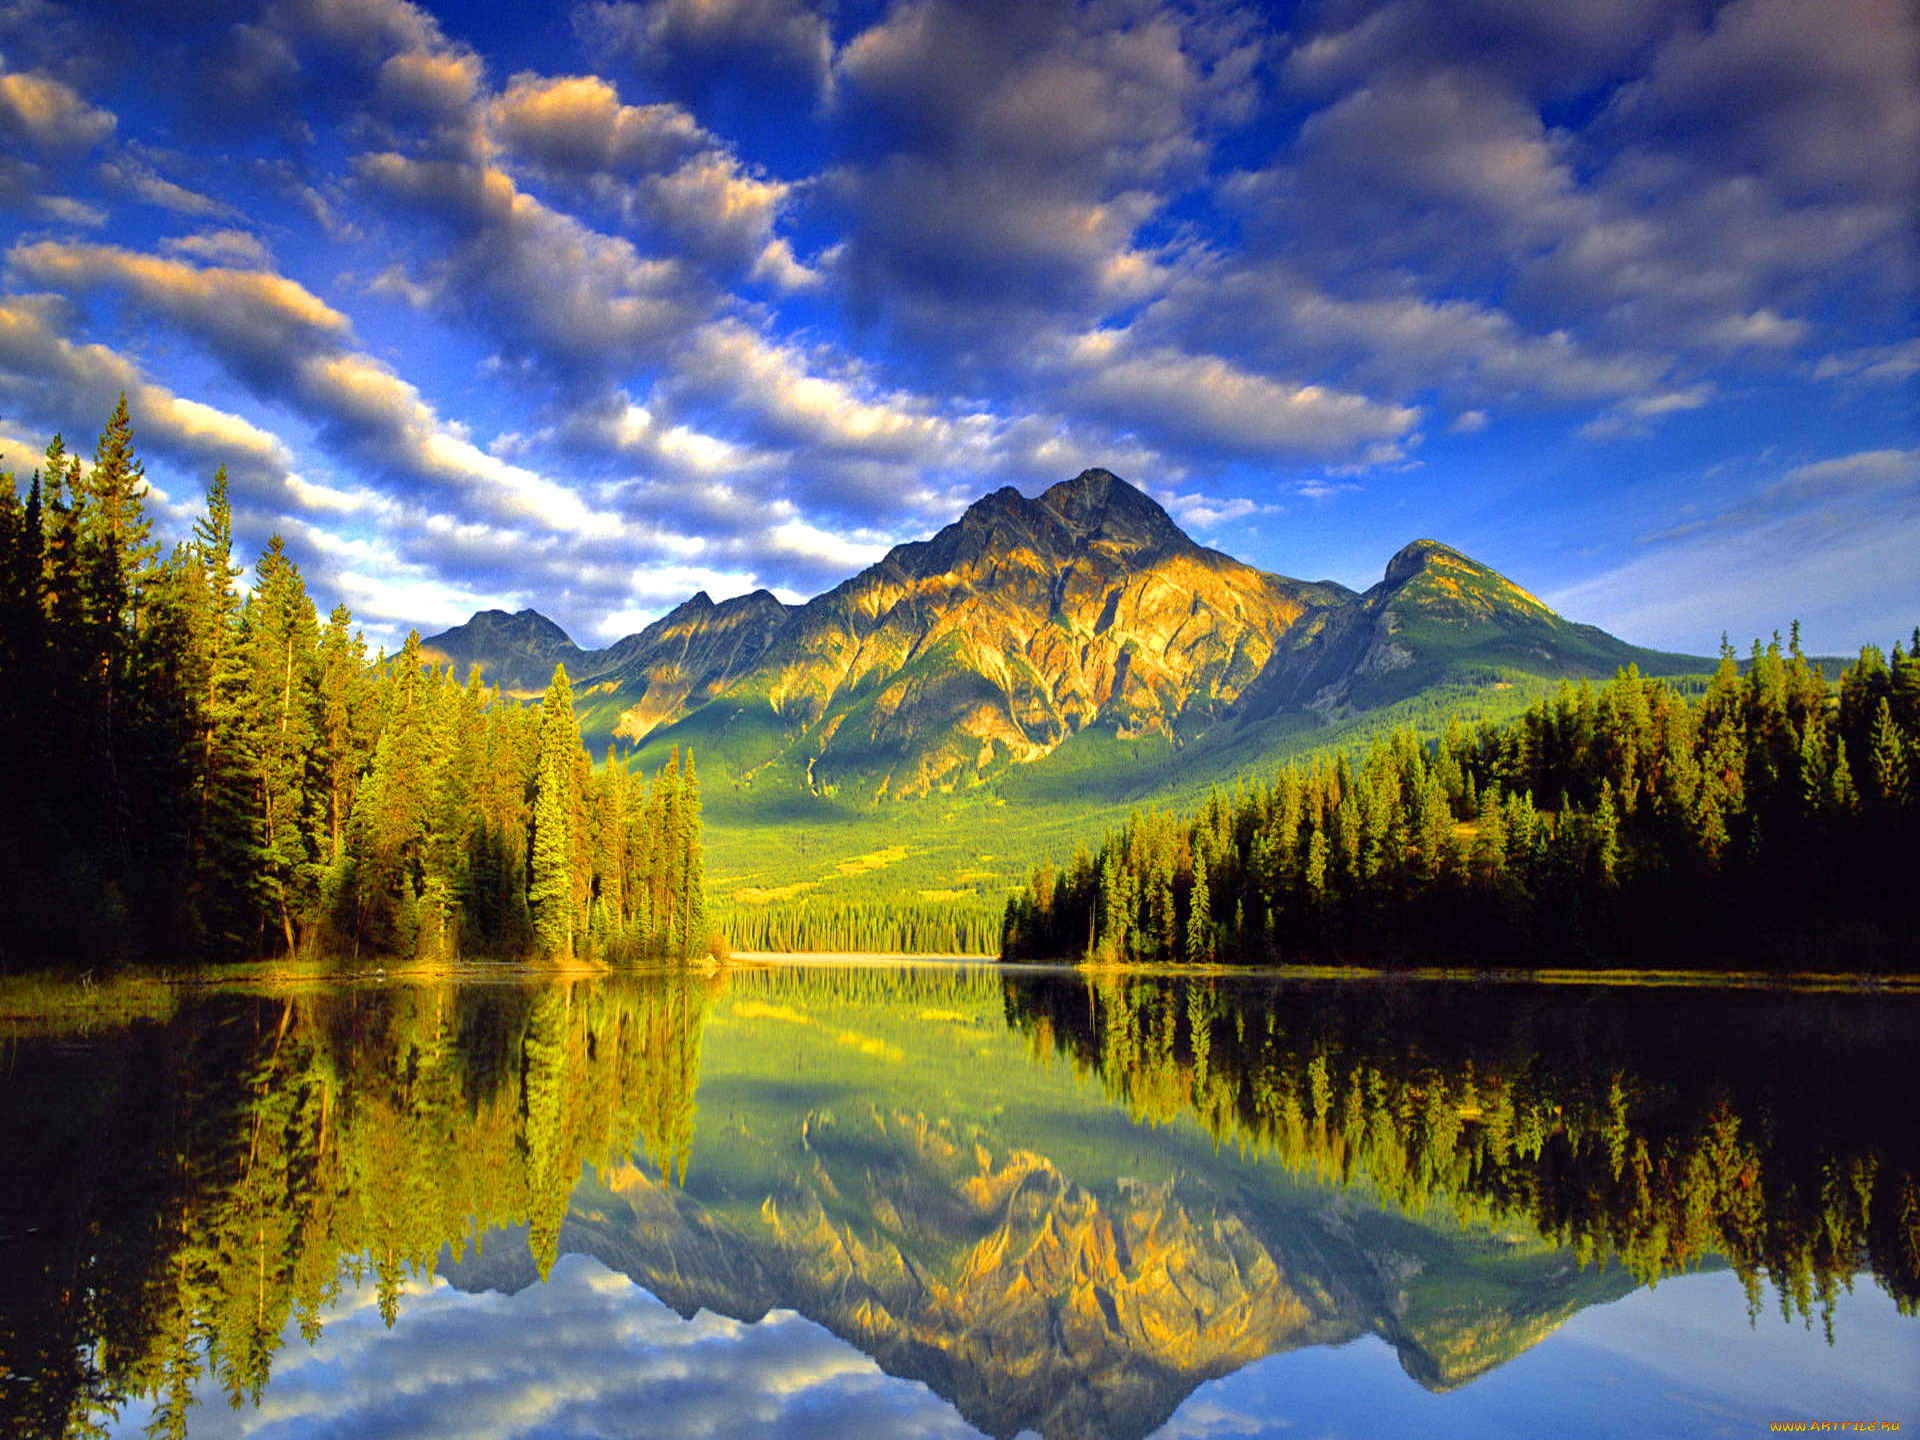 Тема реки и озера. Национальный парк Джаспер, Альберта, Канада. Озеро Малайн в национальном парке Джаспер Альберта Канада. Природа. Пейзаж.